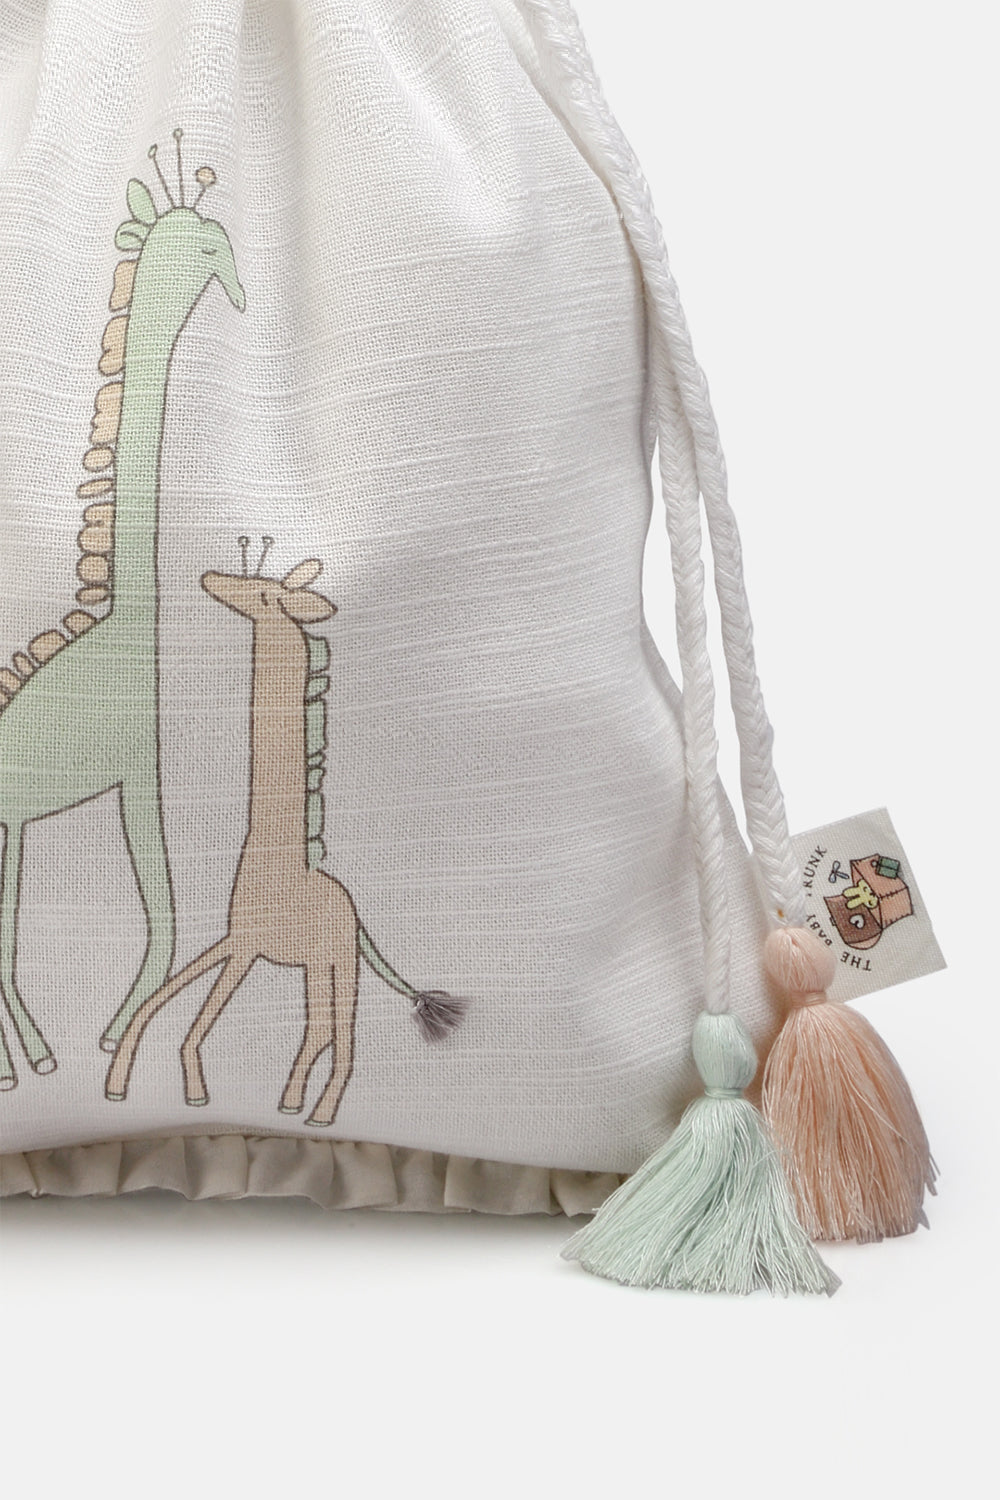 Little Bag Pouches - Giraffe